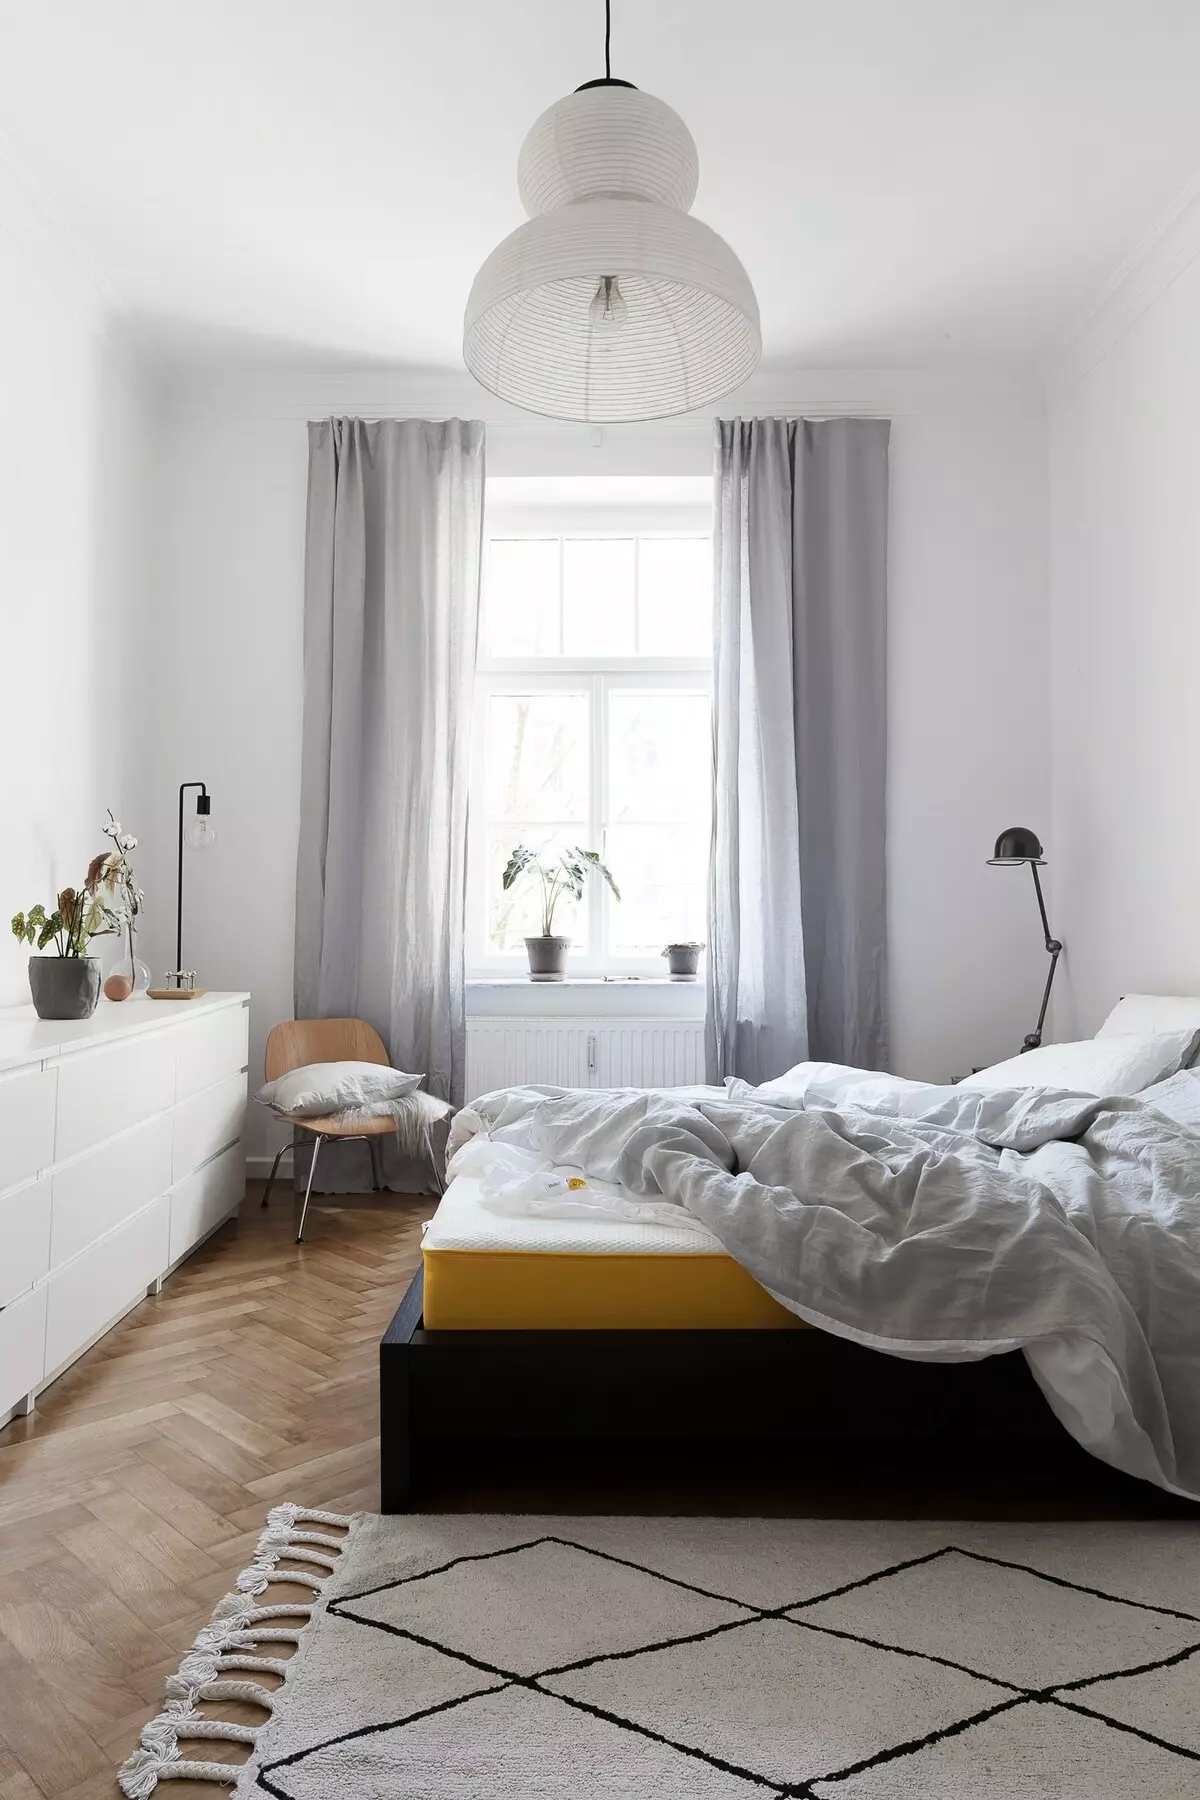 Elegante interior de dormitorio ligero con acentos oscuros. Photo Scandinavian Style